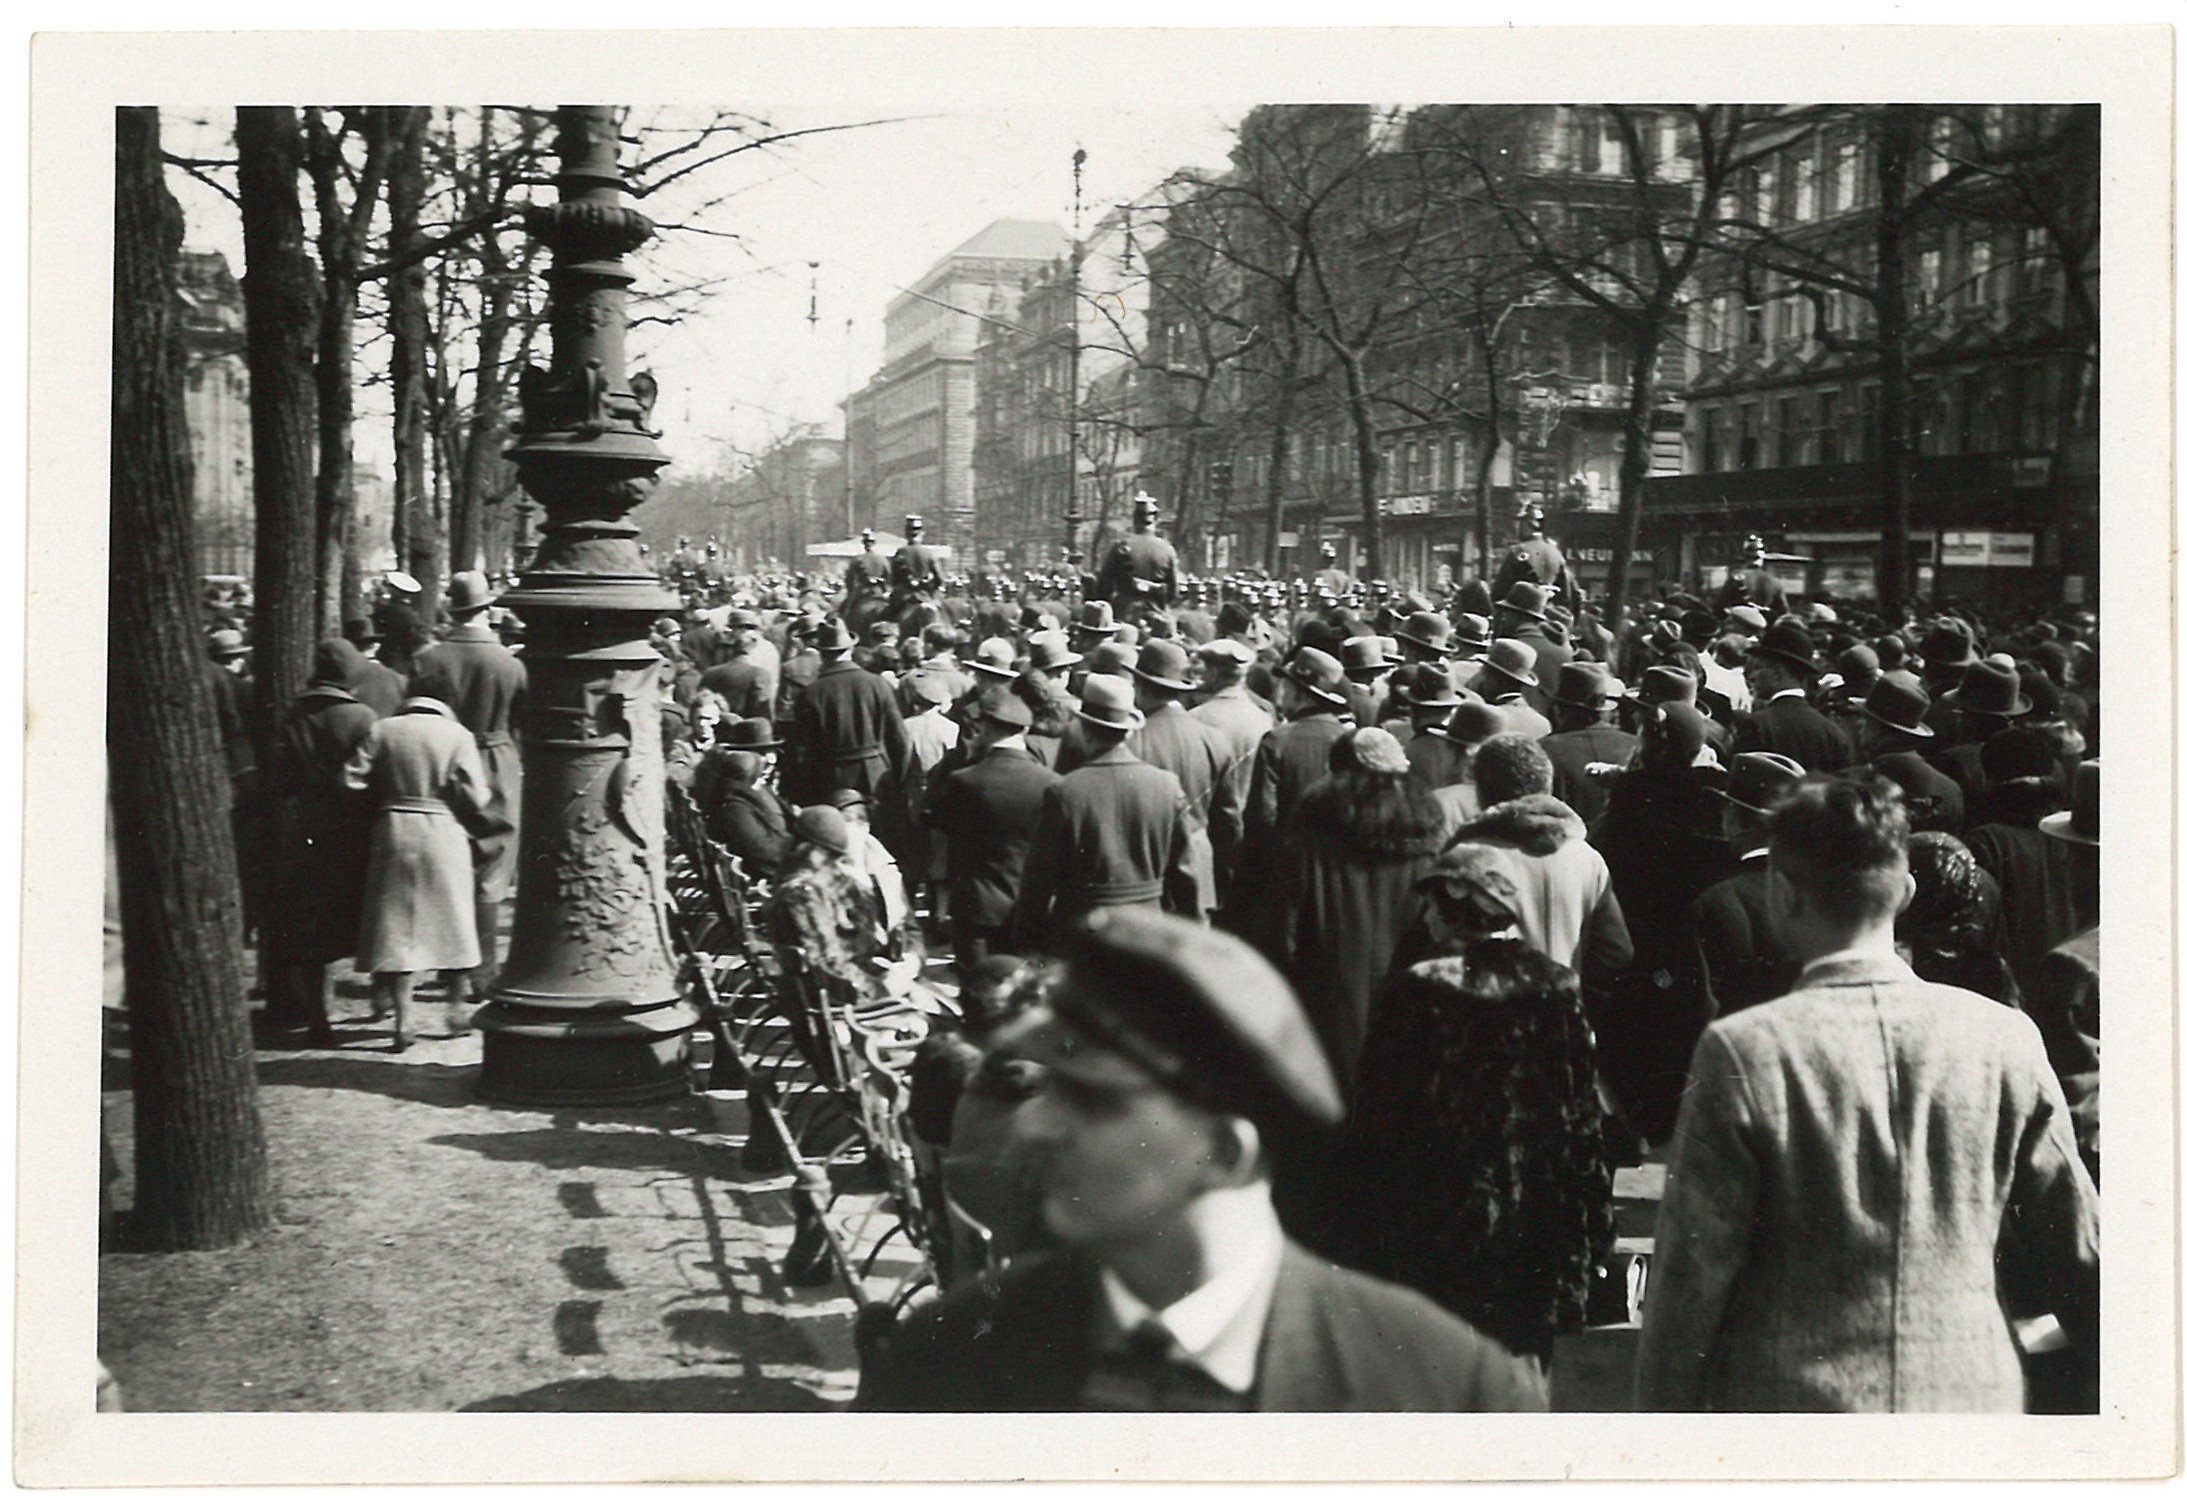 Berlin-Mitte: Unter den Linden, Menschenmenge um 1931 (Landesgeschichtliche Vereinigung für die Mark Brandenburg e.V., Archiv CC BY)